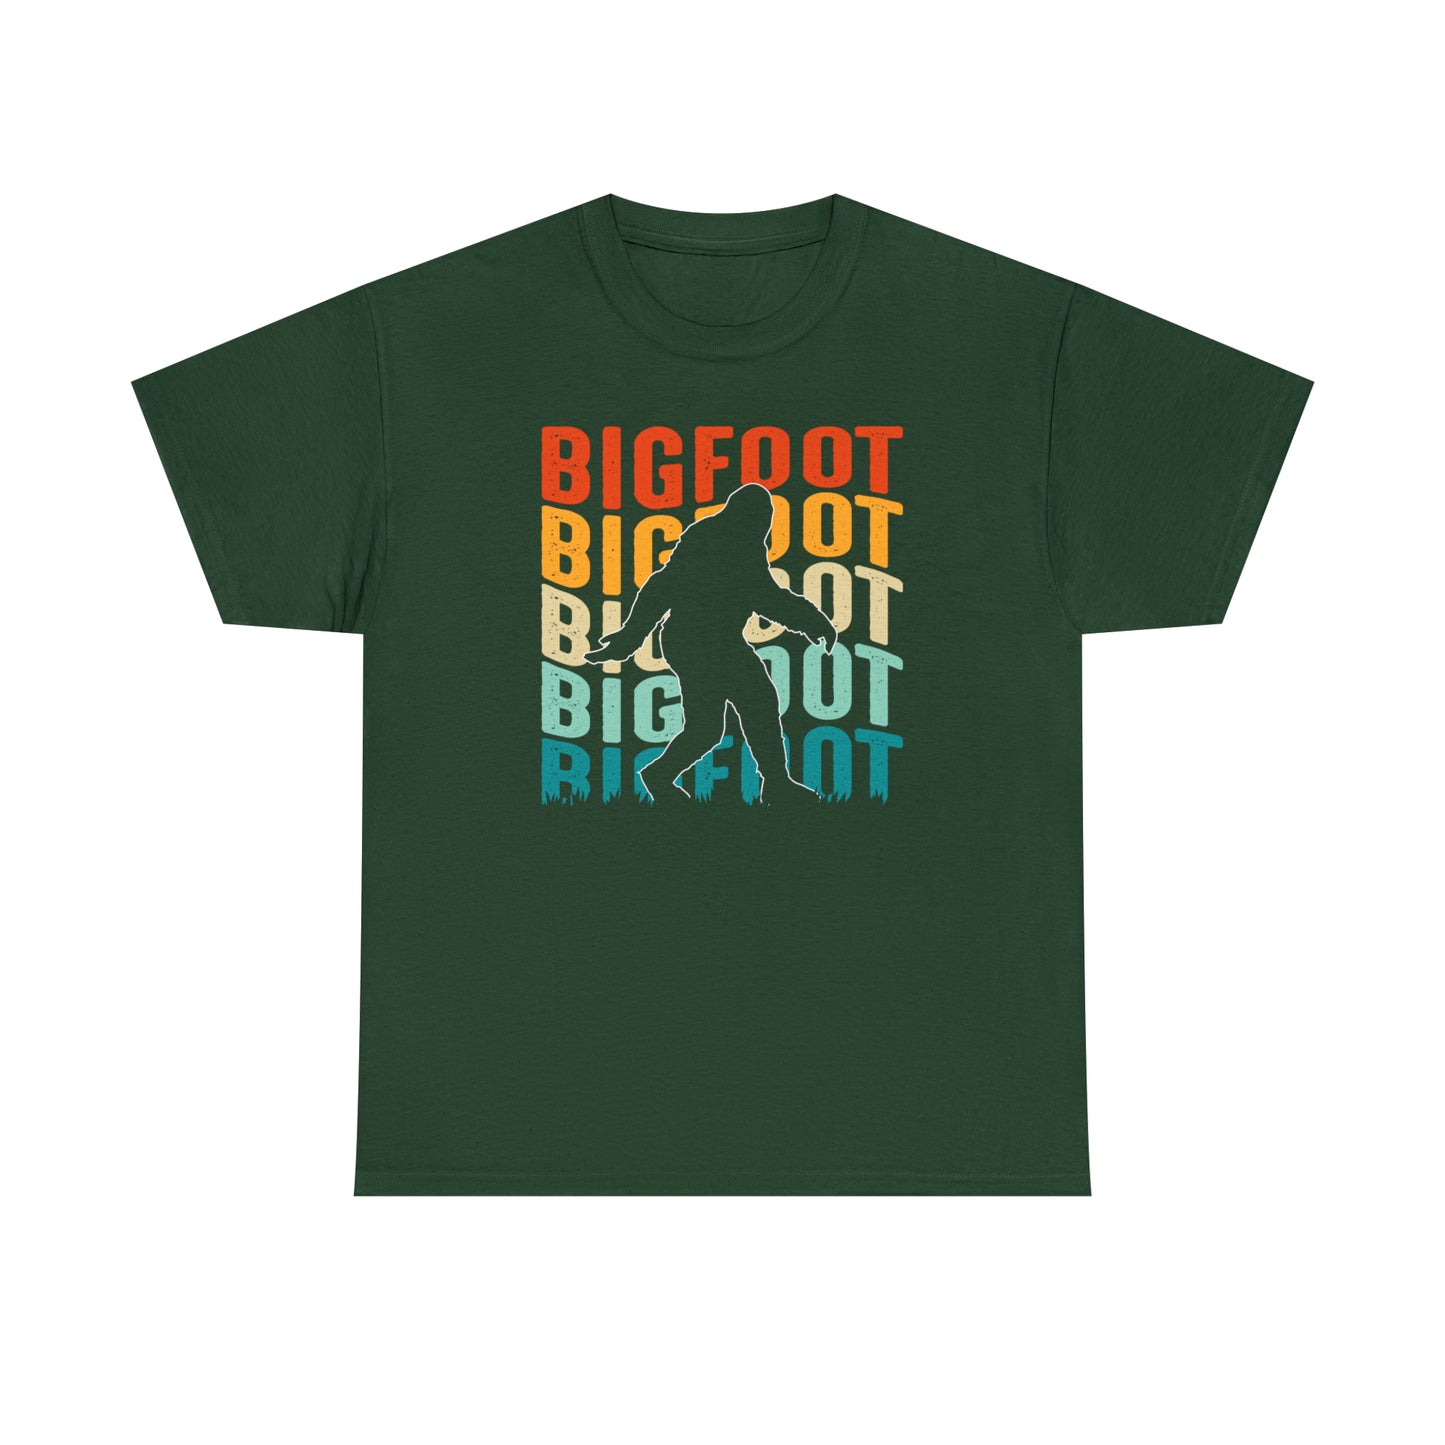 Bigfoot T-Shirt For Yeti TShirt For Sasquach T Shirt For Colorful Bigfoot Tee For Conspiracy Theory TShirt For Yeti Fan